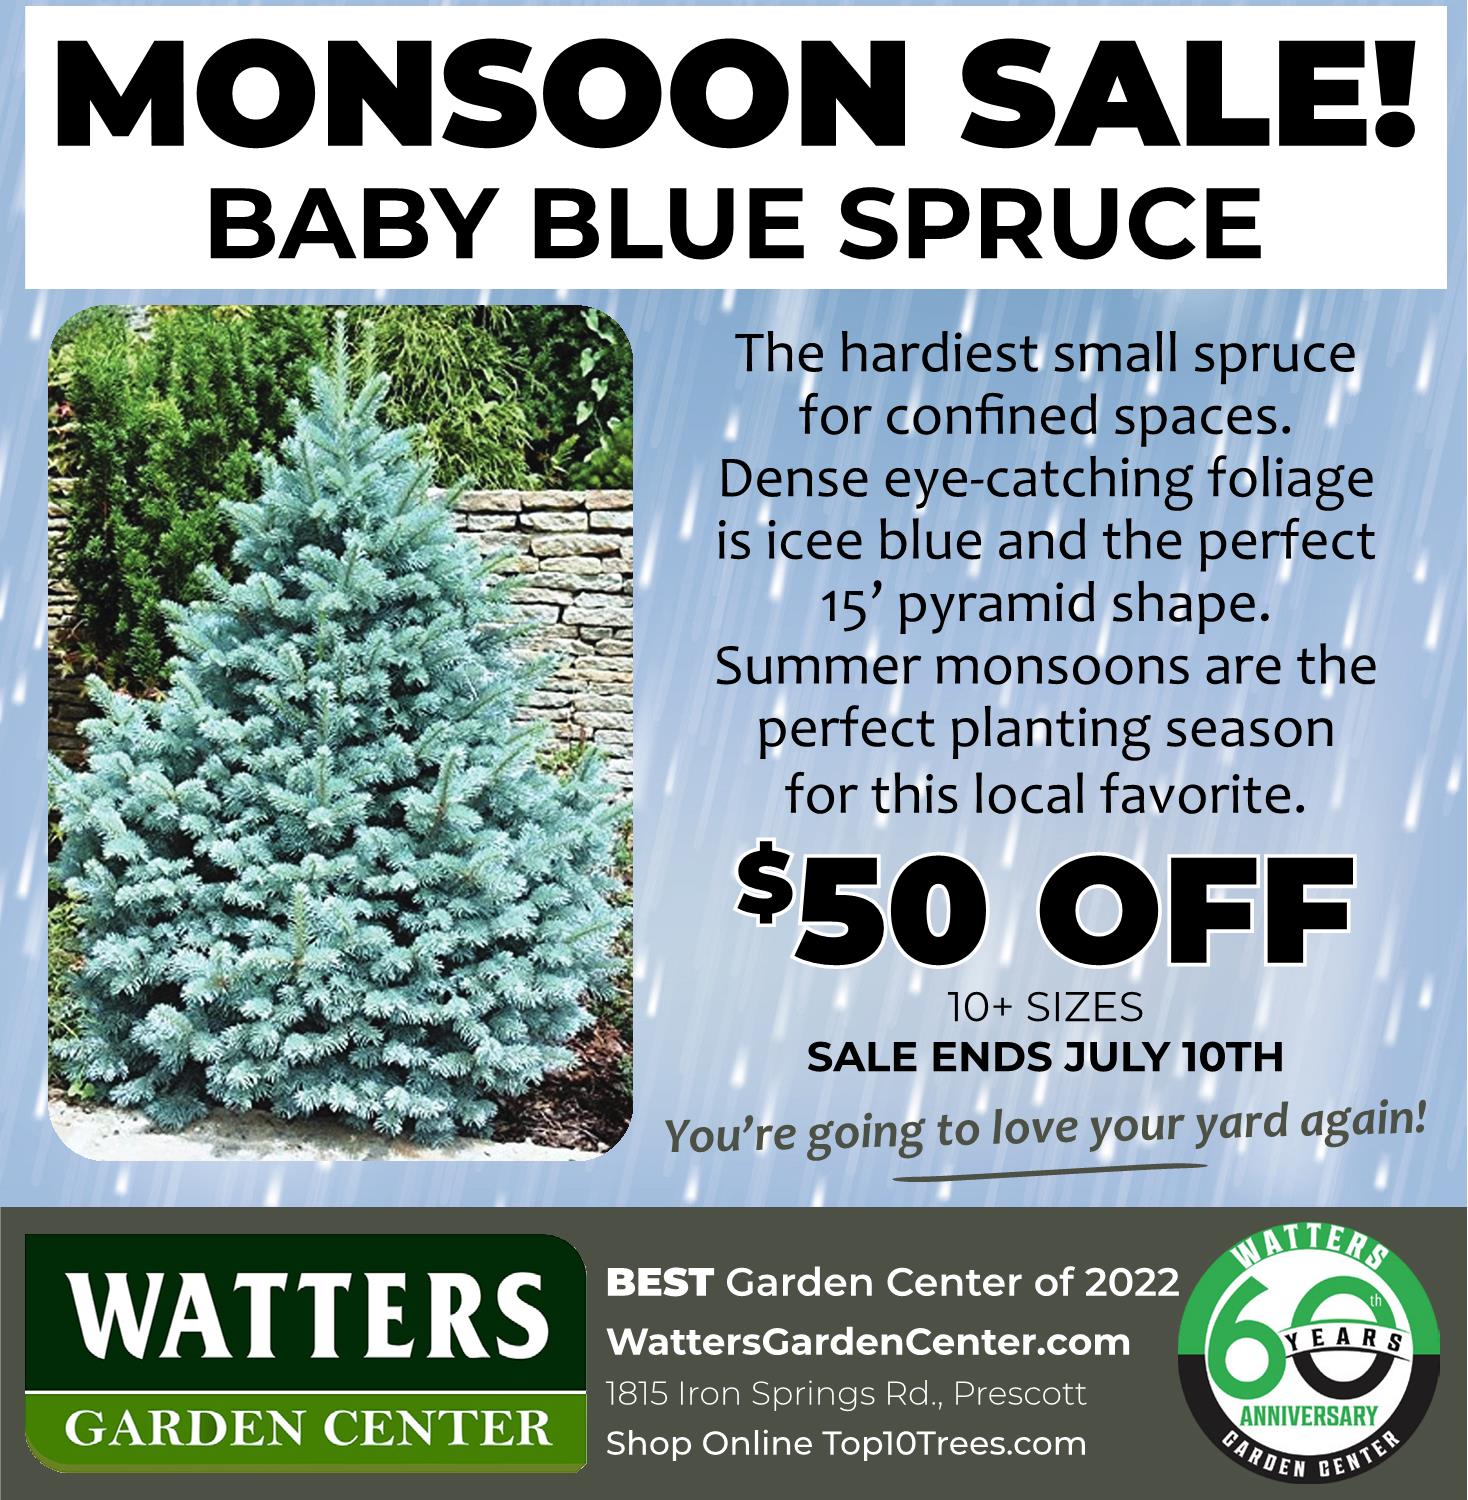 Monsoon Sale - Baby Blue Spruce - Watters Garden Center